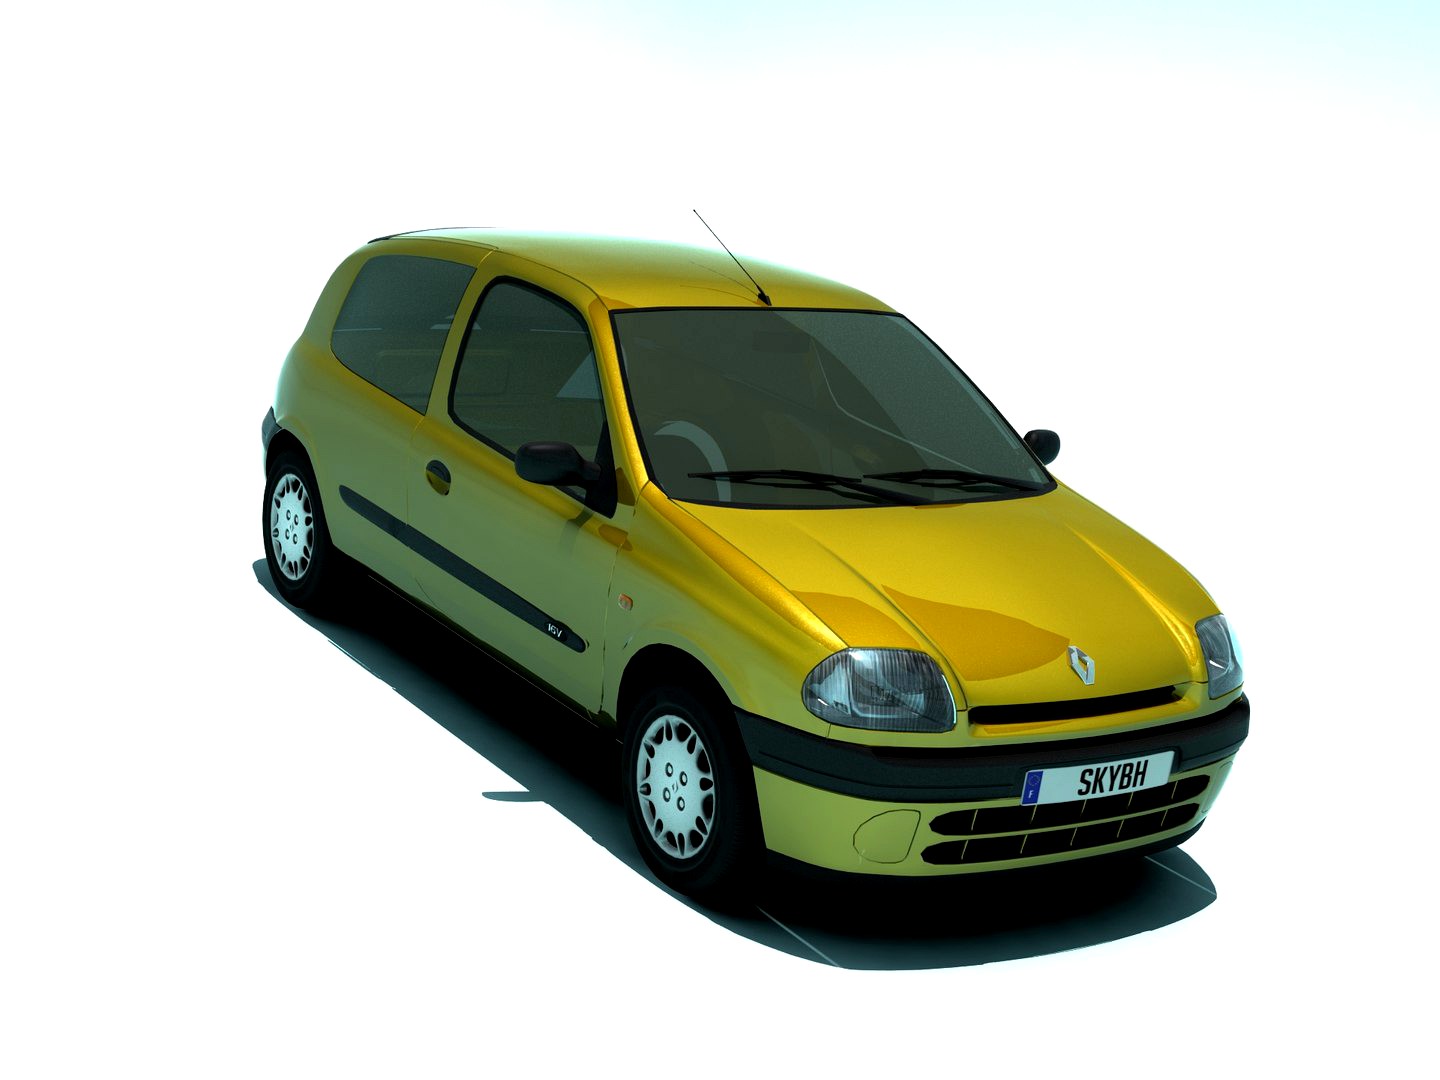 Renault Clio 1998 3doors